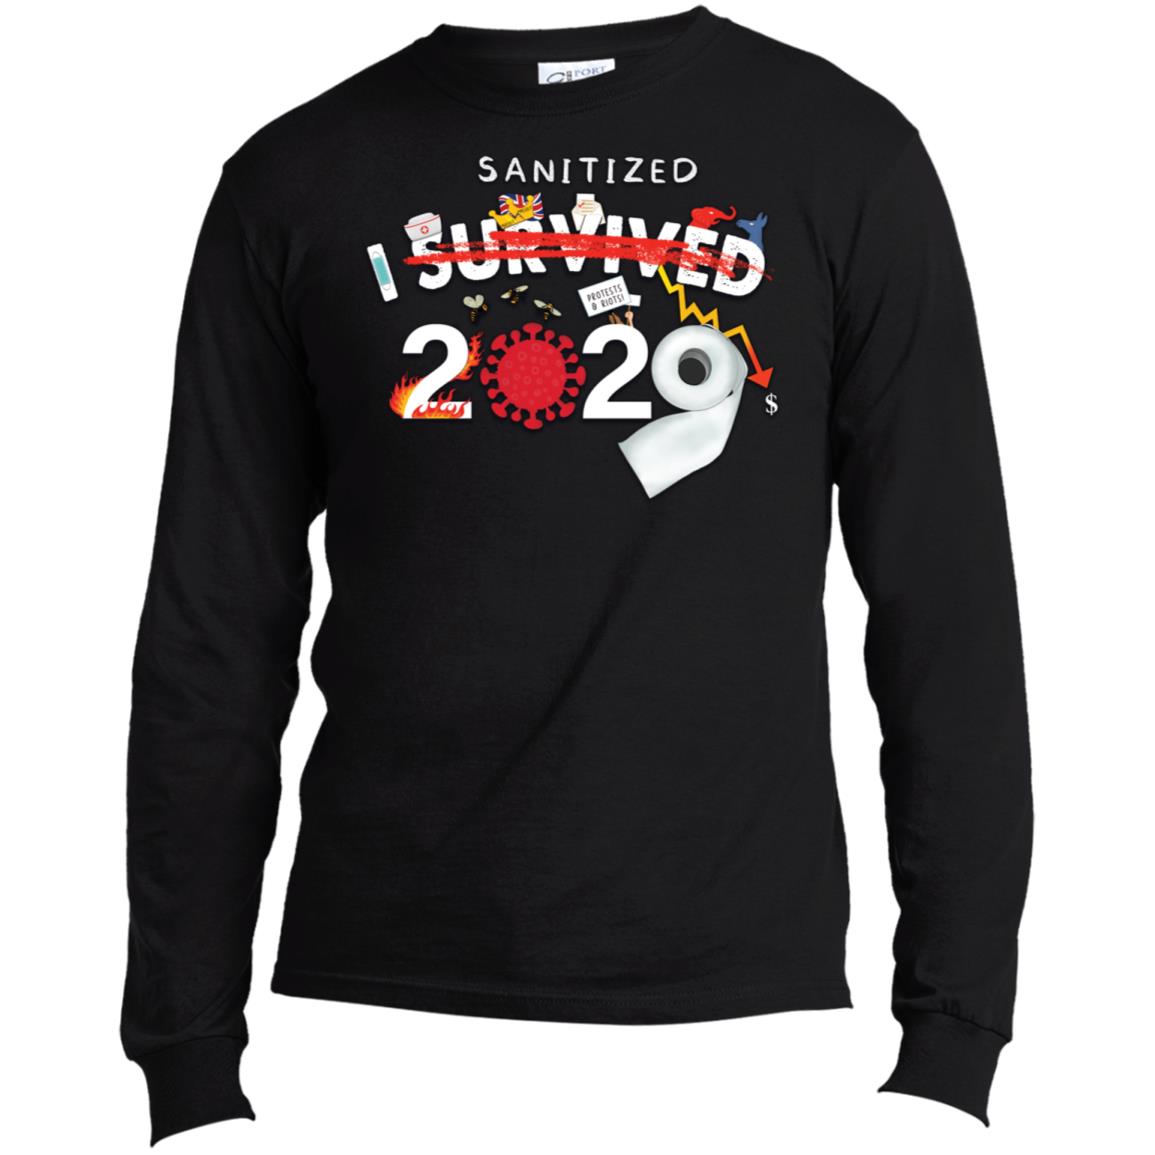 I Sanitized 2020 - Long Sleeve T-Shirt